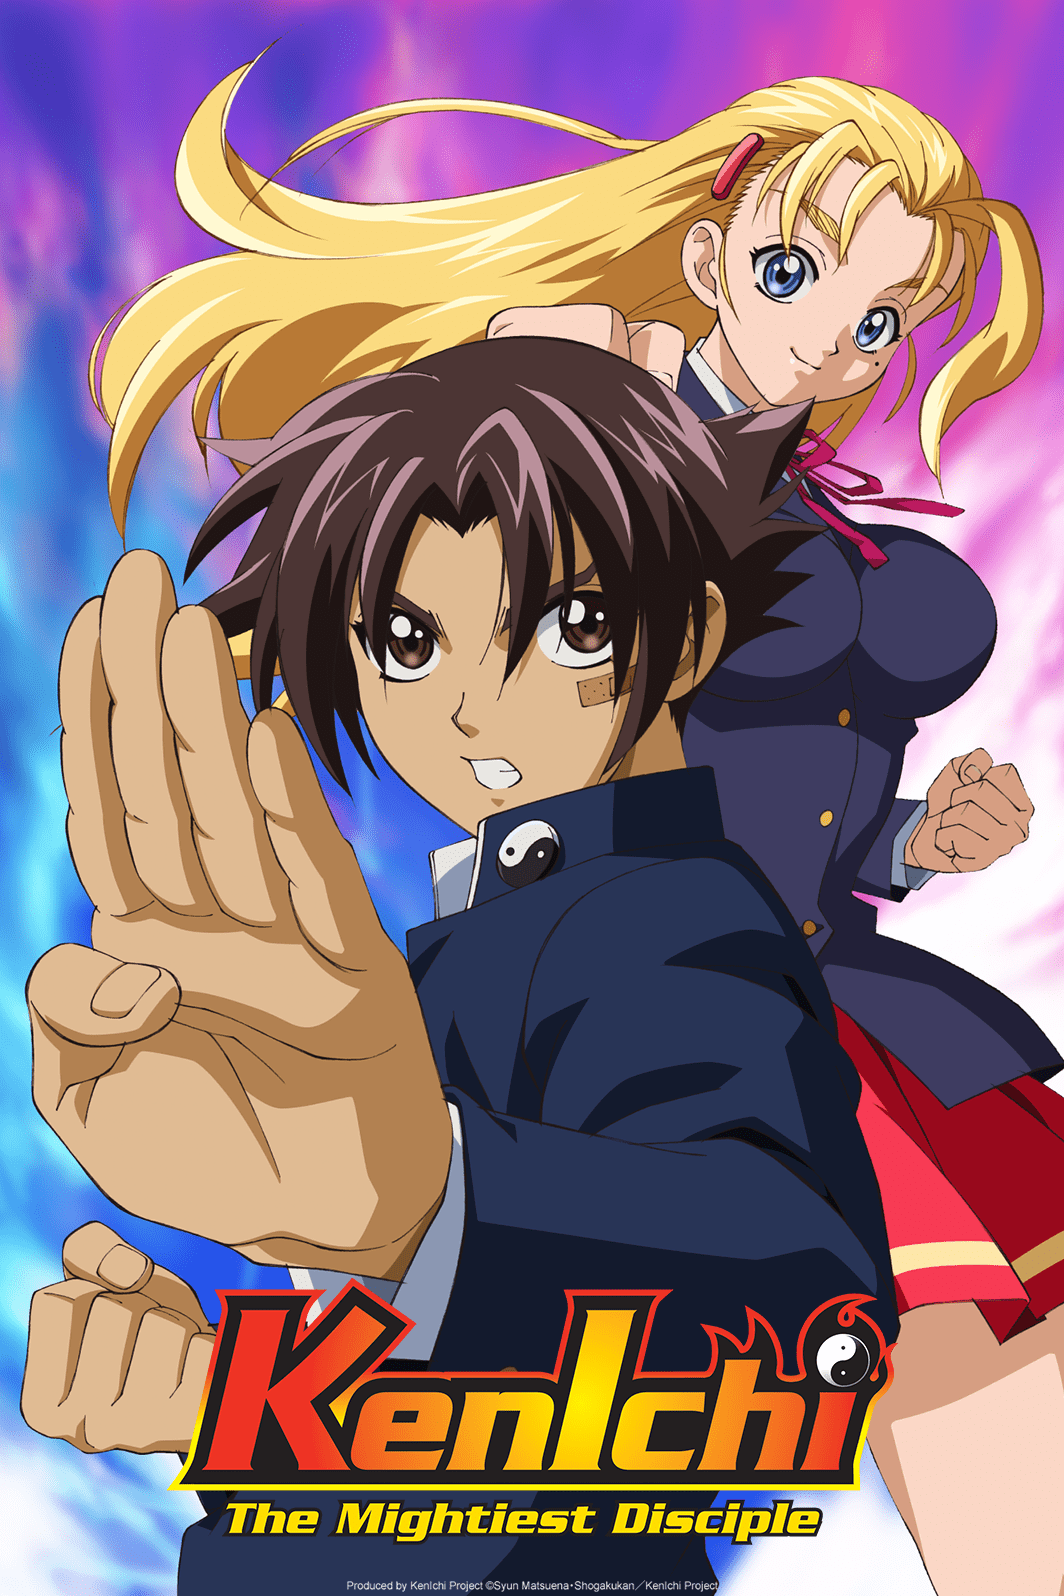 Una imagen promocional para el anime de televisión Kenichi: The Mightiest Disciple, con el personaje principal Kenichi Shirahama y Miu Furinji en poses de artes marciales.